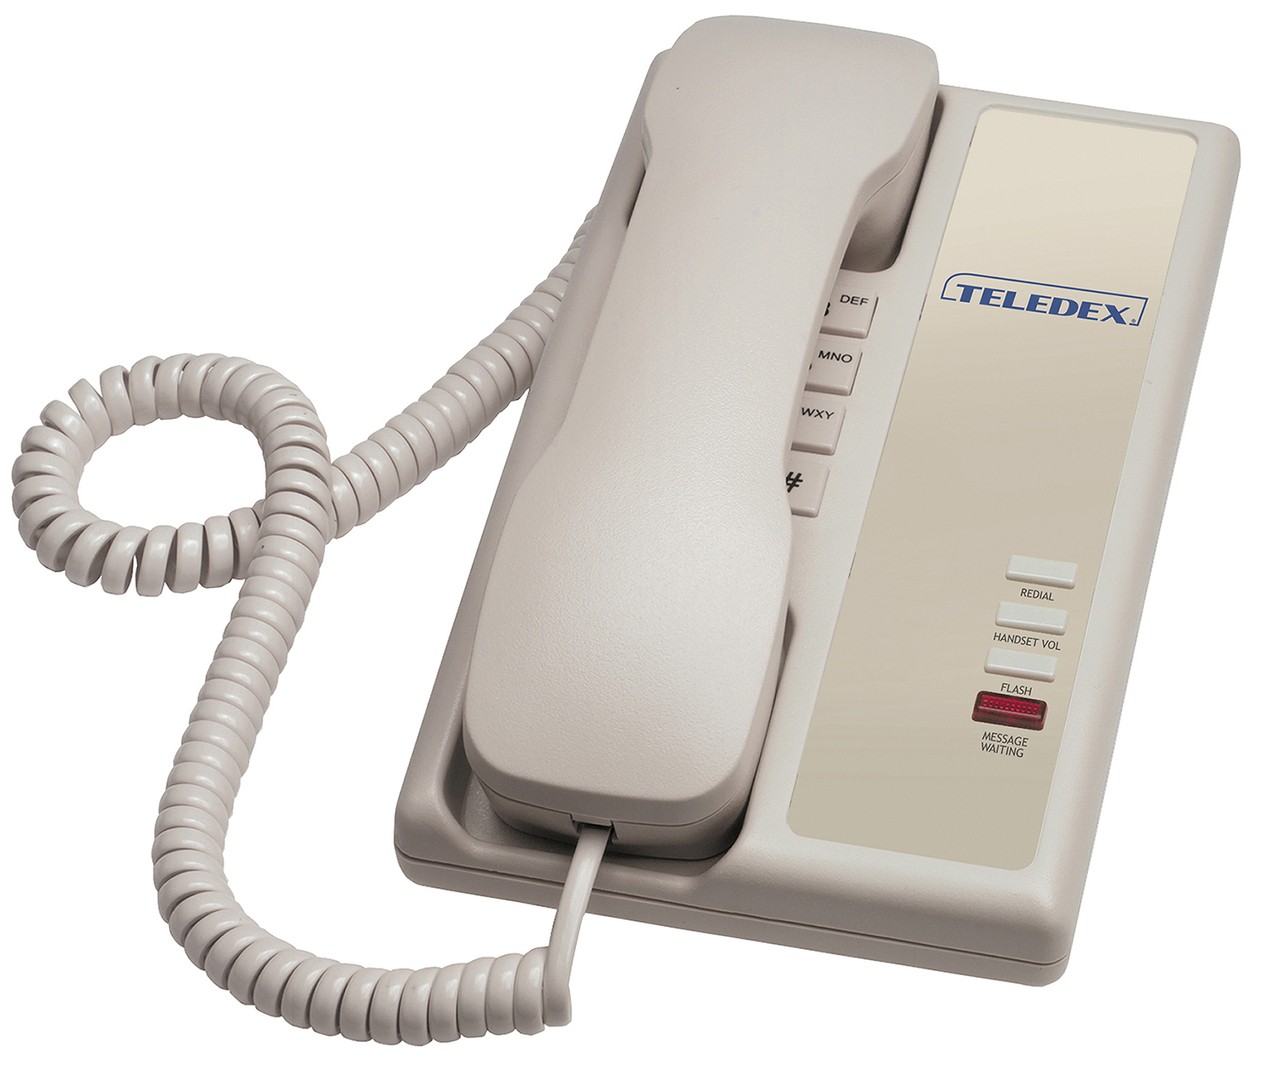 Teledex Nugget Guestroom Telephone Ash